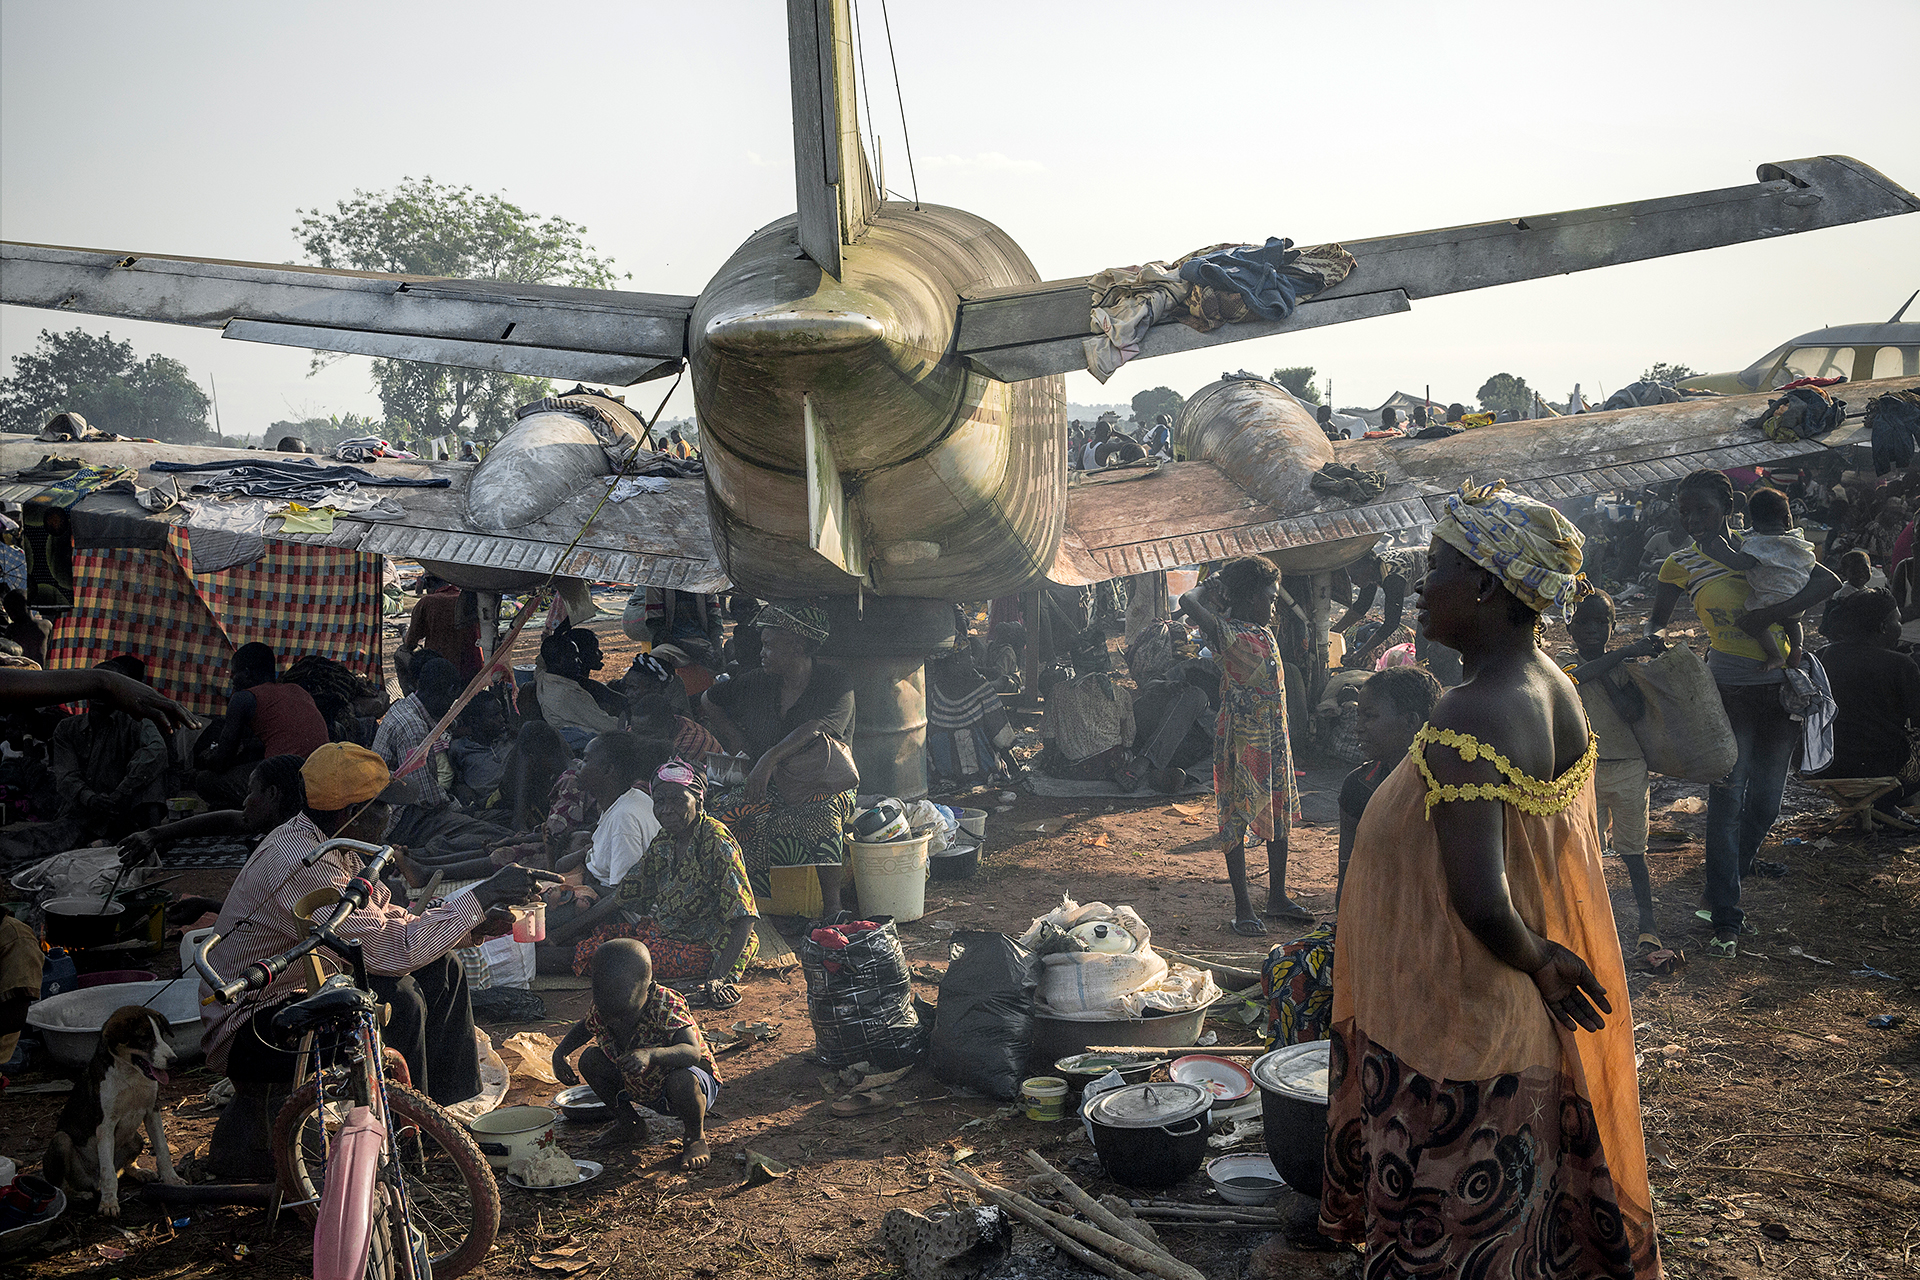 Un campo profughi vicino allaeroporto MPoko di Bangui, con circa 1000 sfollati interni che si sono rifugiati in questo luogo per la presenza dellesercito francese nelle vicinanze.  William Daniels/Panos Pictures.